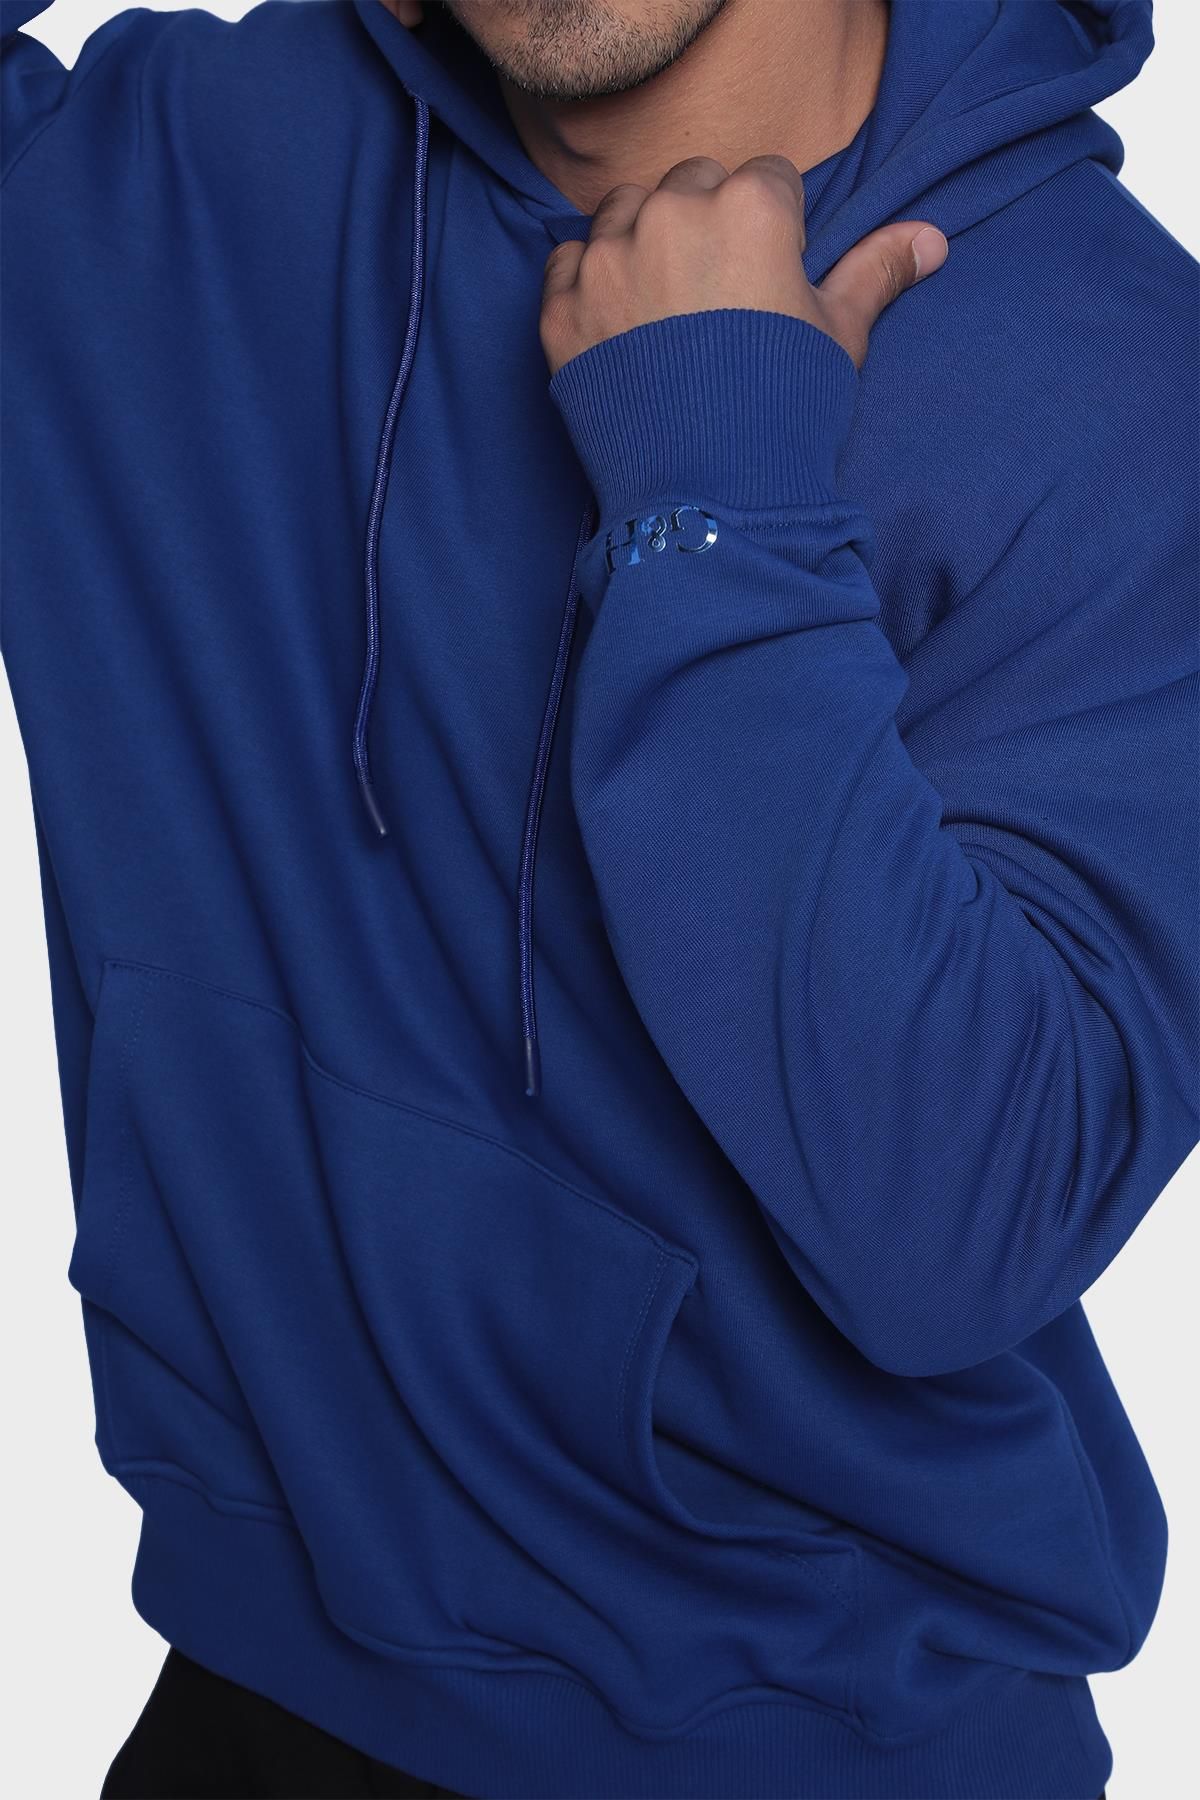 Erkek kapüşonlu ve uzun kollu sweatshirt - Sax mavi